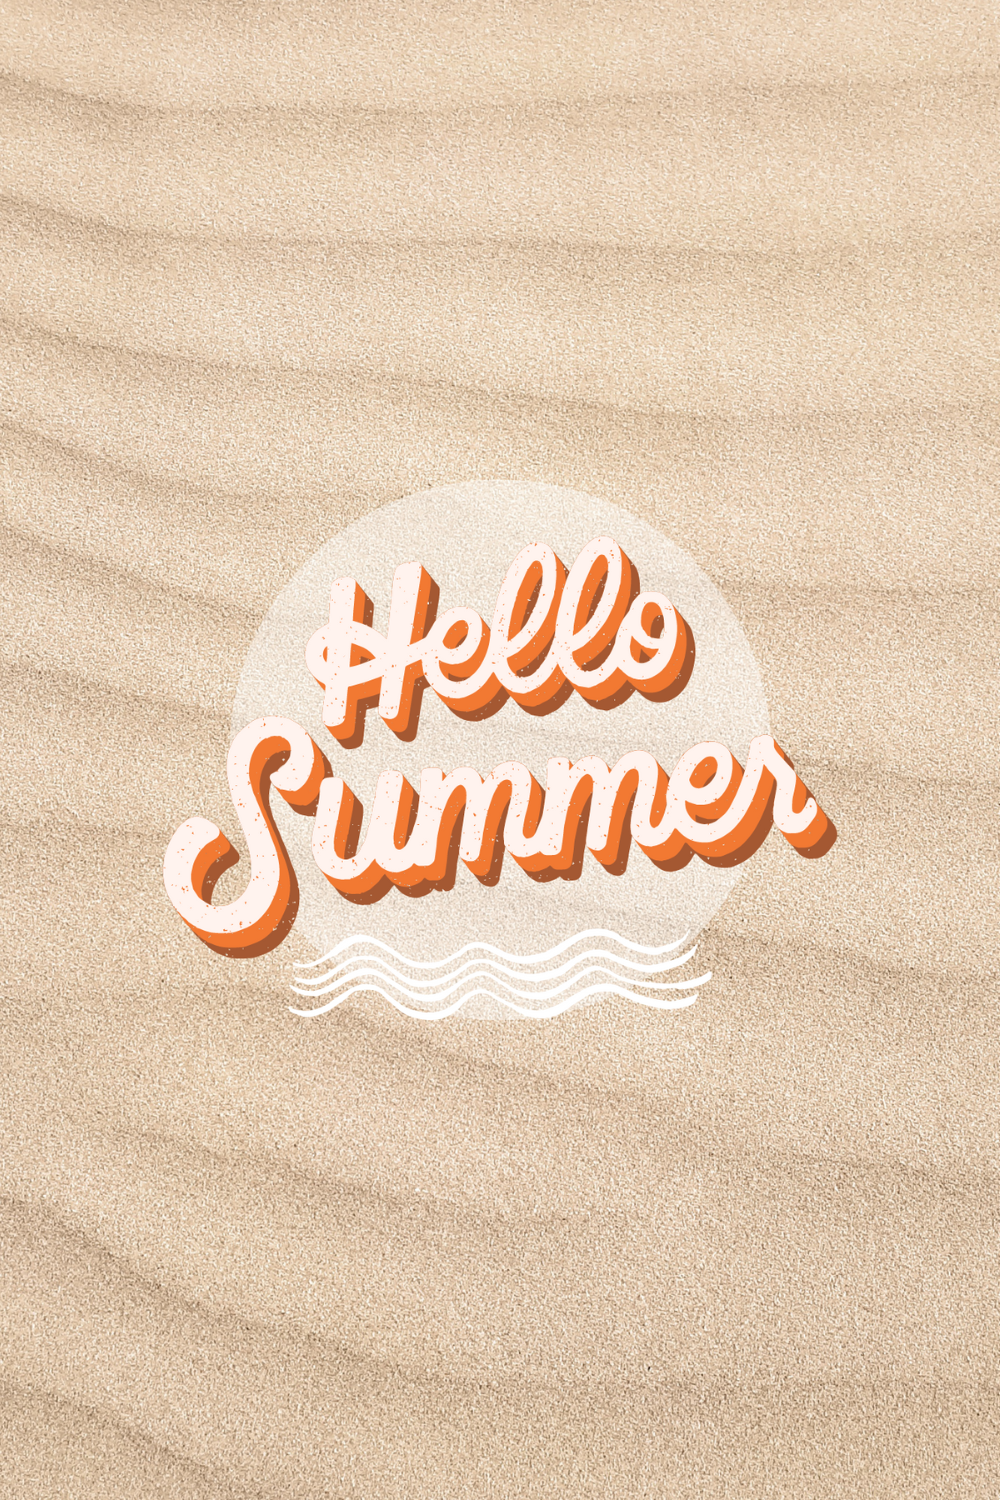 hello summer wallpaper